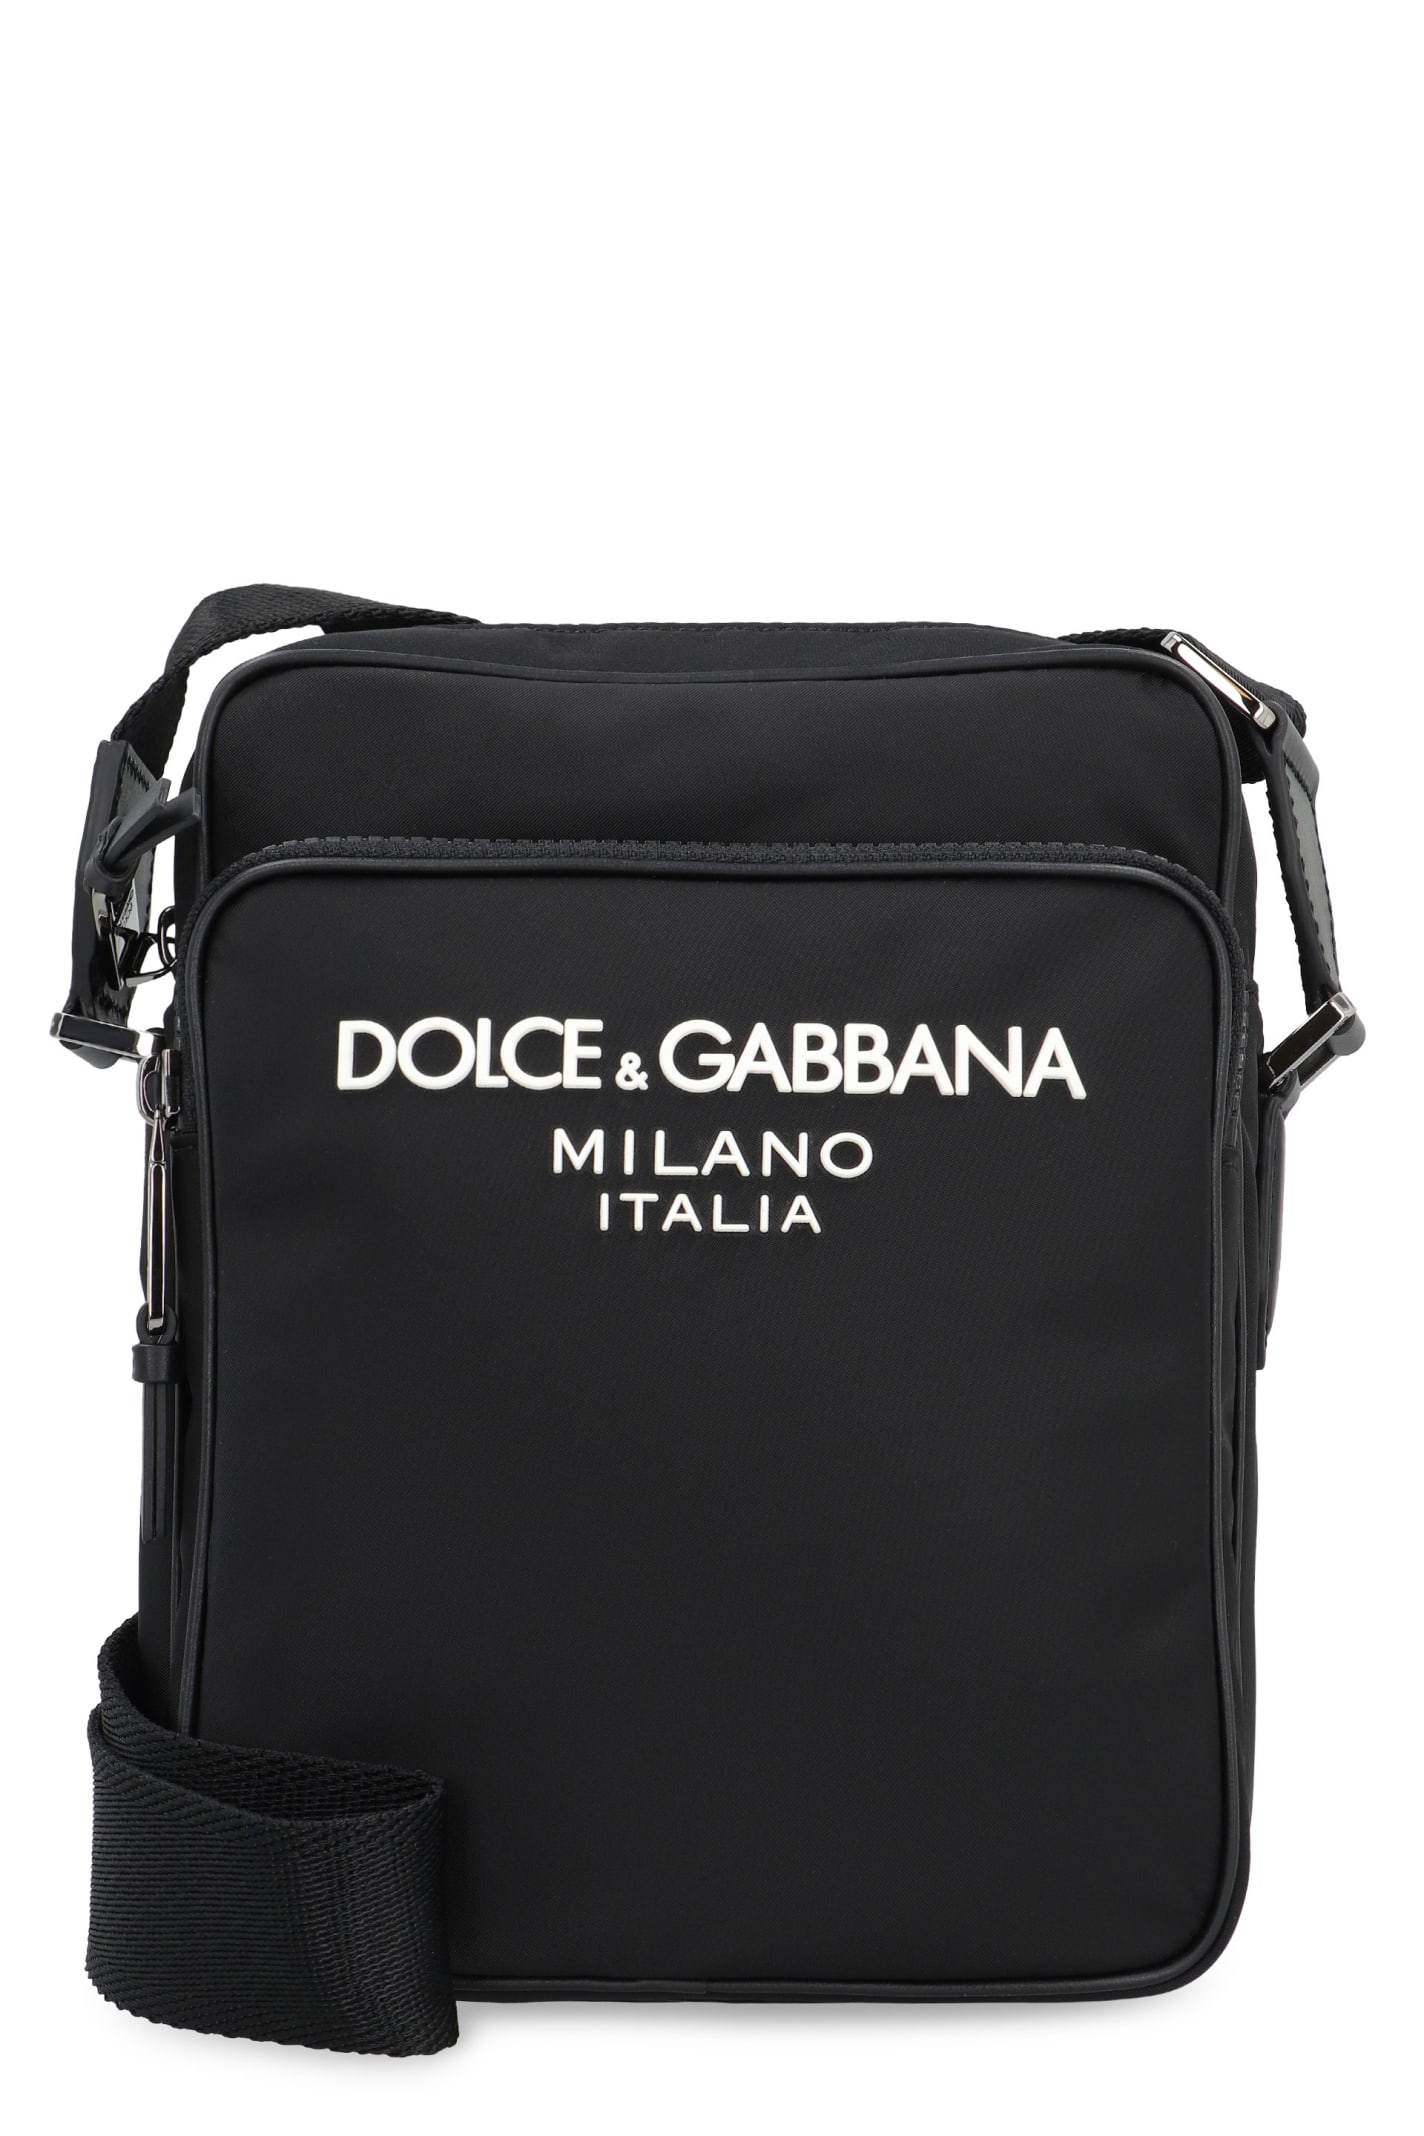 Dolce & Gabbana Nylon Messenger Bag In Black